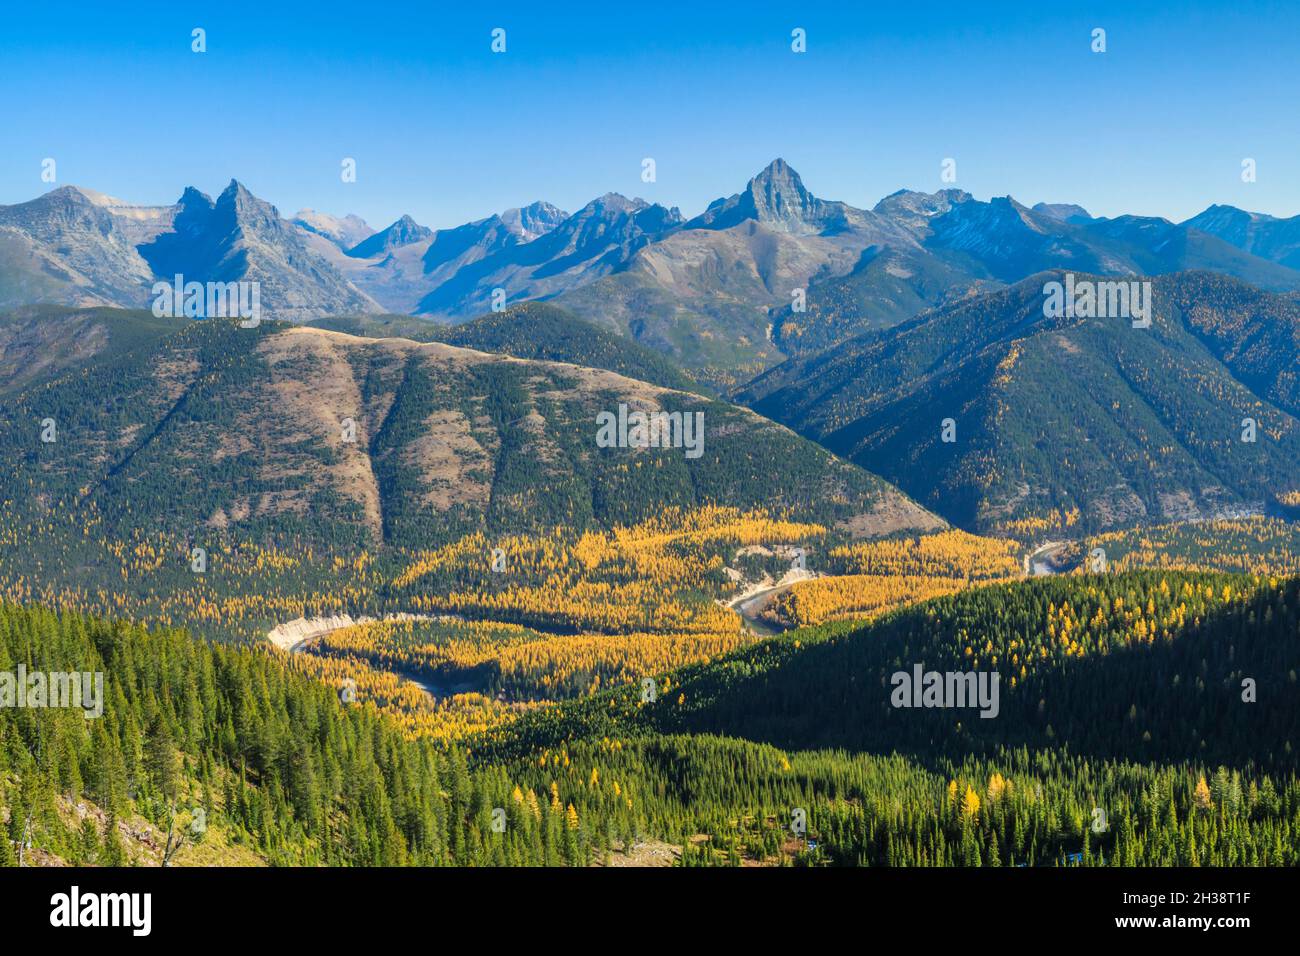 Die Gipfel des Gletschernationalparks, die über der herbstlichen Lärche des Flathead River Valley der Mittelgabel emporragen, vom Grant Ridge in der Nähe von essex, montana, aus gesehen Stockfoto